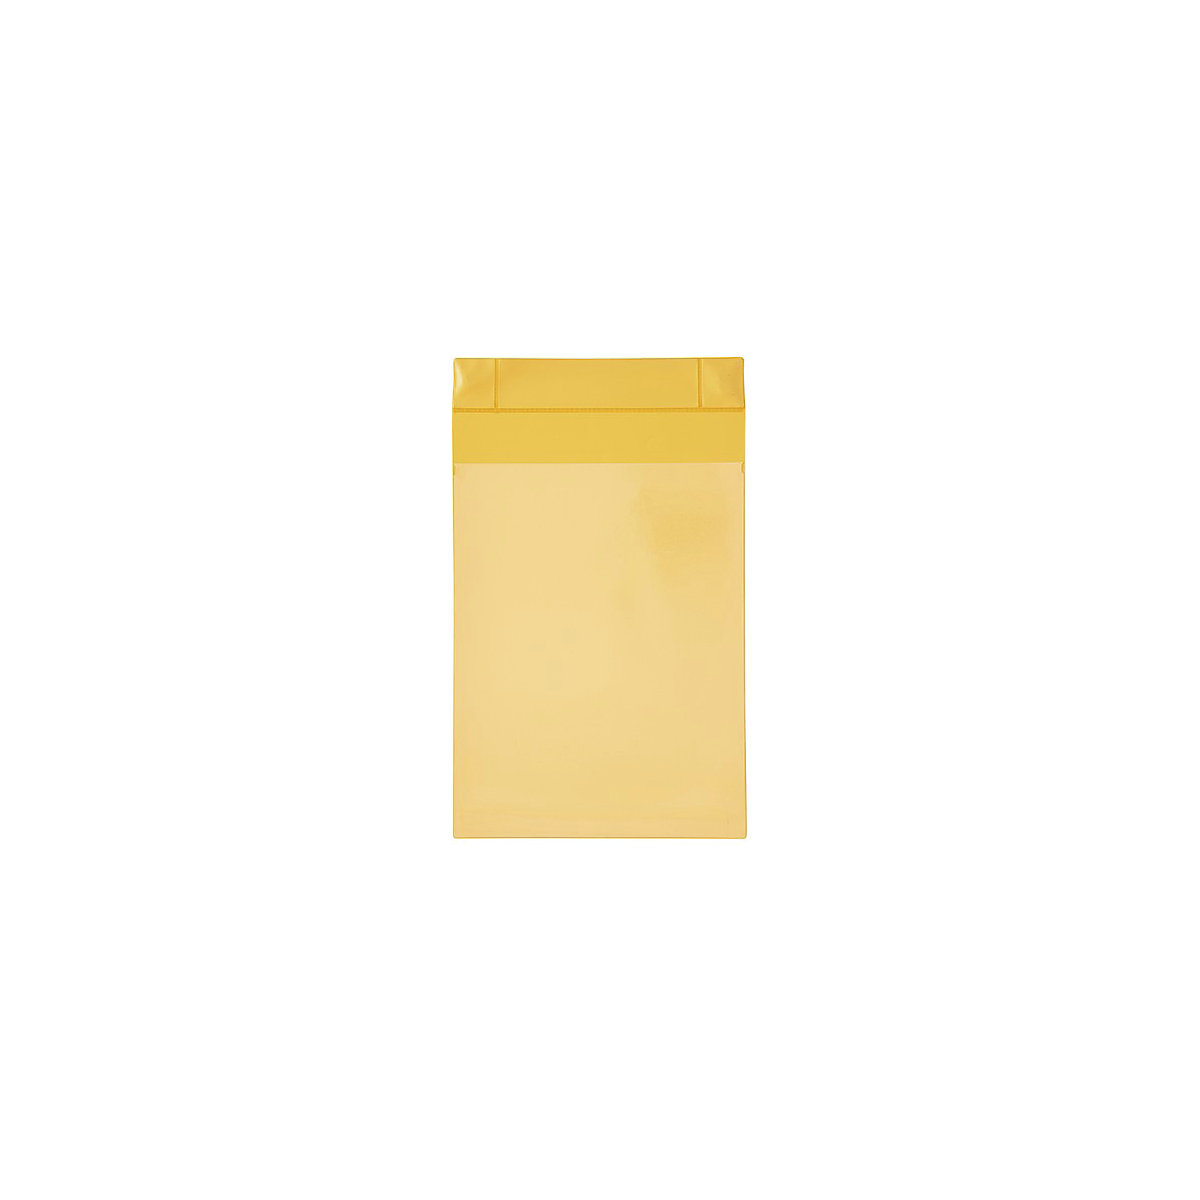 Magnetische tassen neodymium, staand formaat, VE = 25 stuks, geel, A4, vanaf 1 VE-5